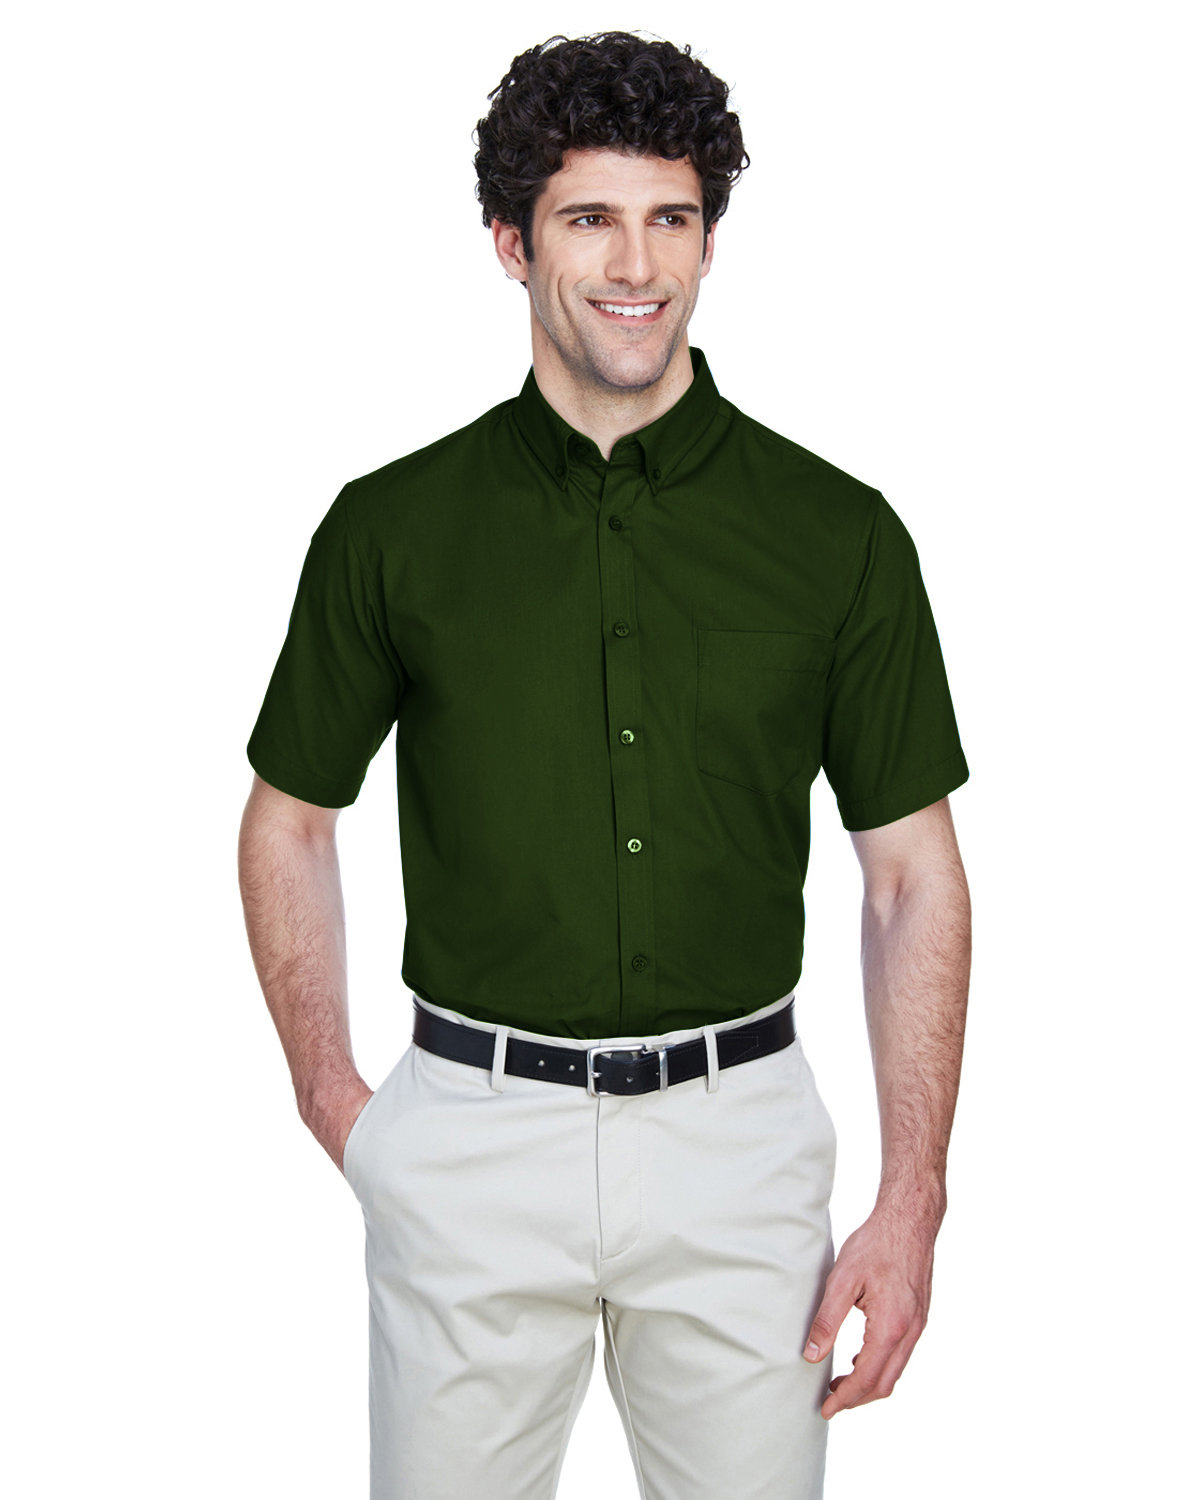 CORE365 Men's Optimum Short-Sleeve Twill Shirt FOREST 